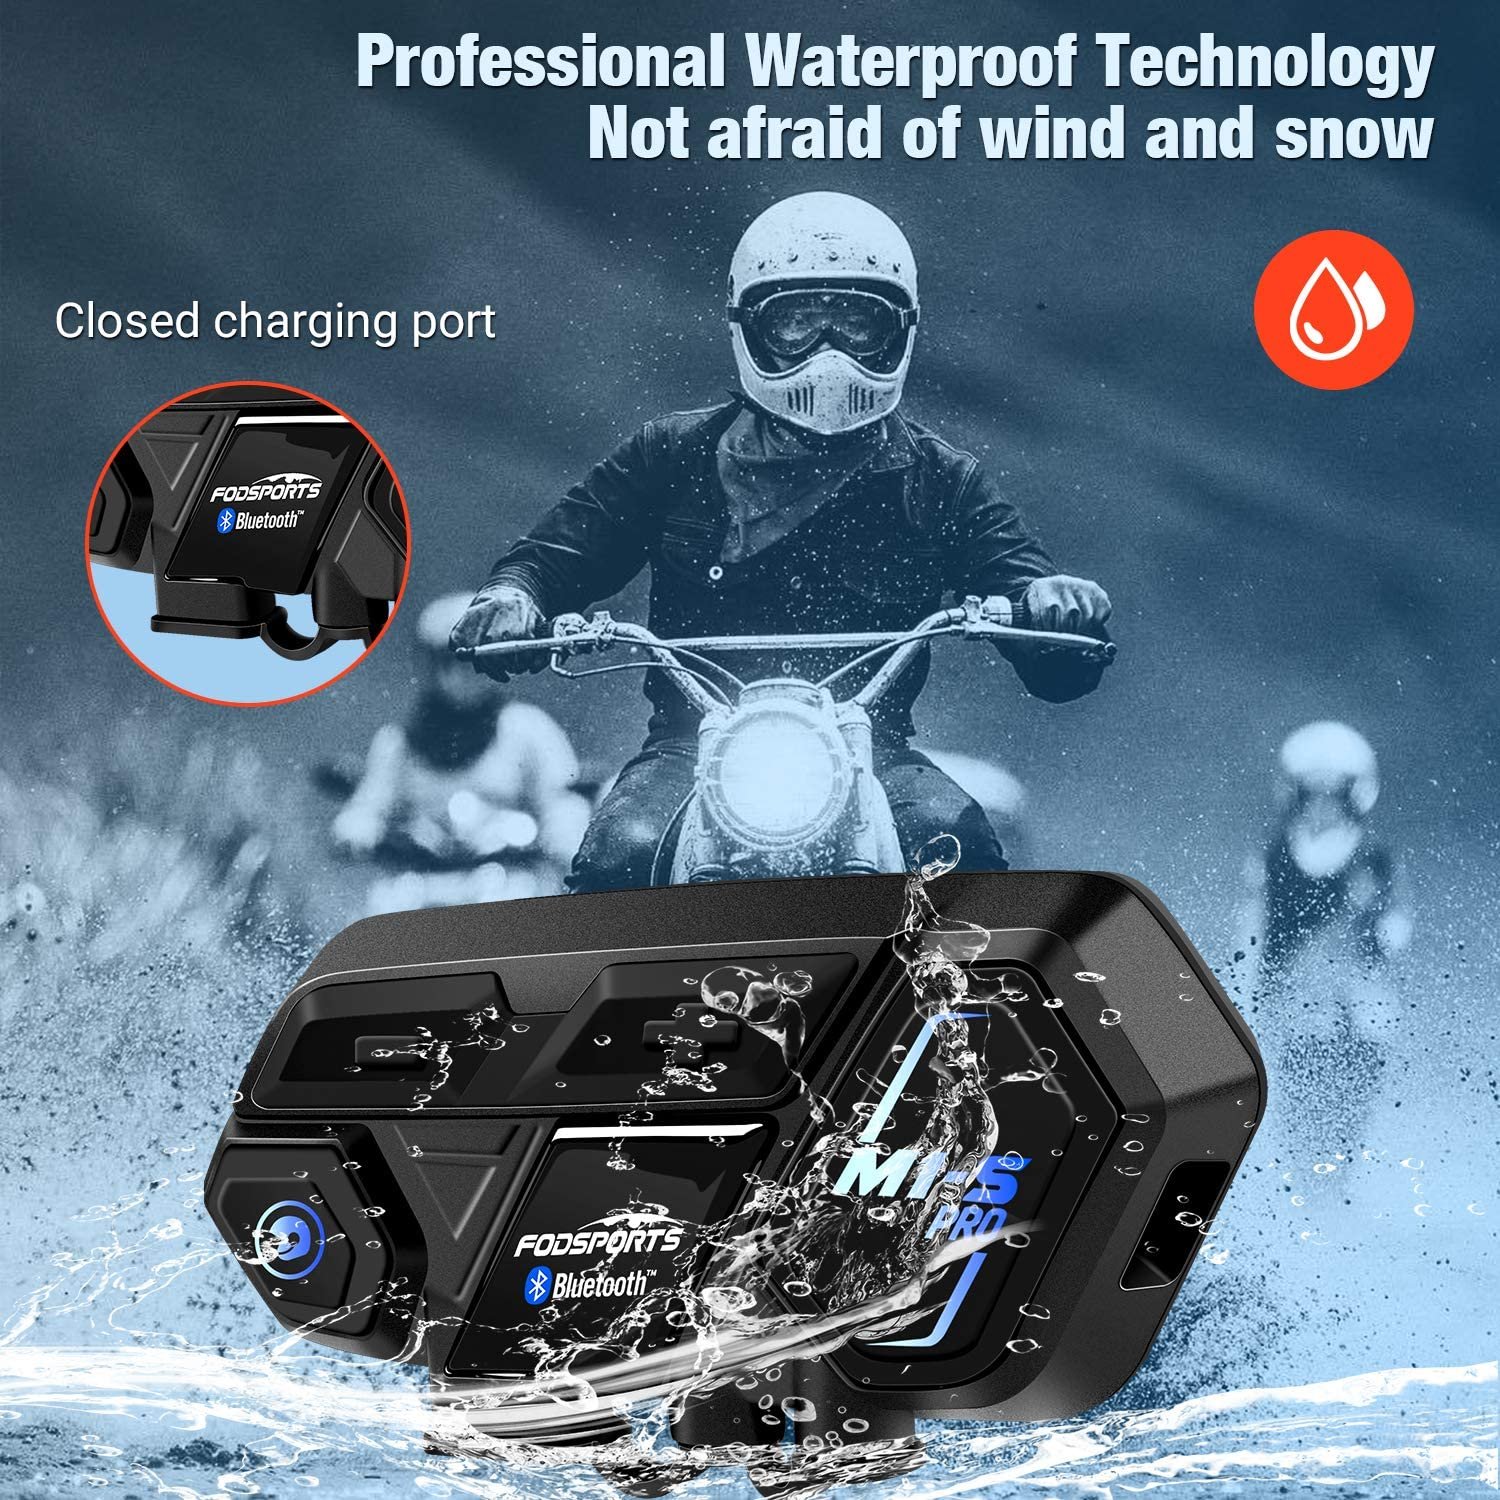 Fodsports M1 S Pro waterproof